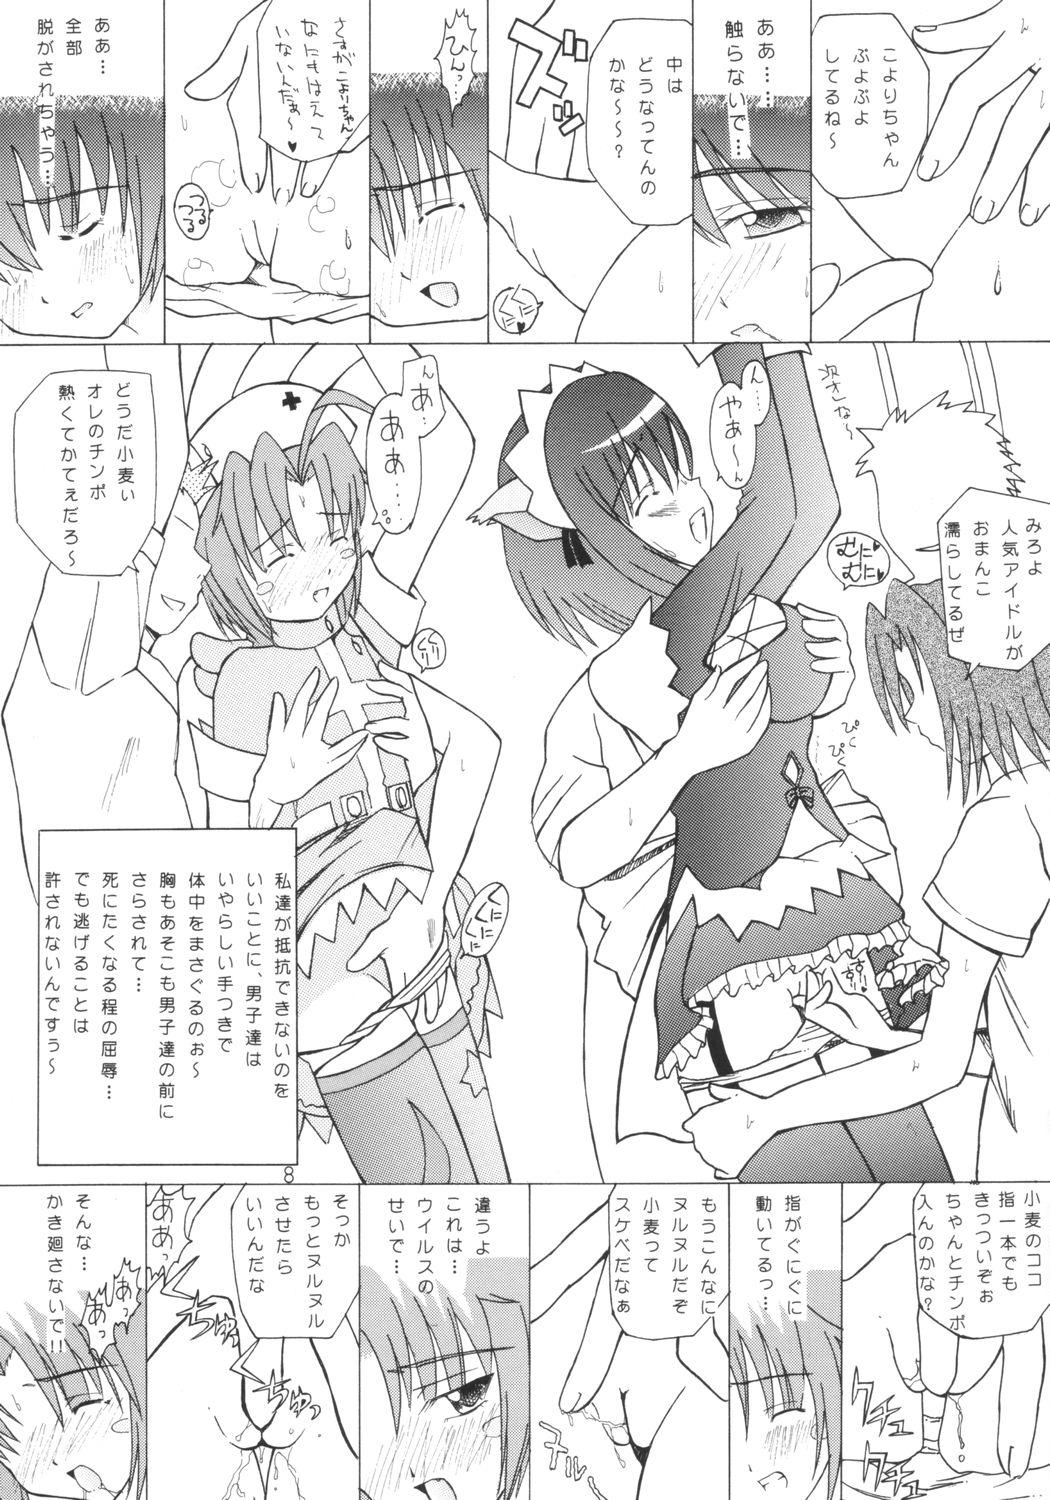 Spooning Komugi Channel - Nurse witch komugi Semen - Page 7